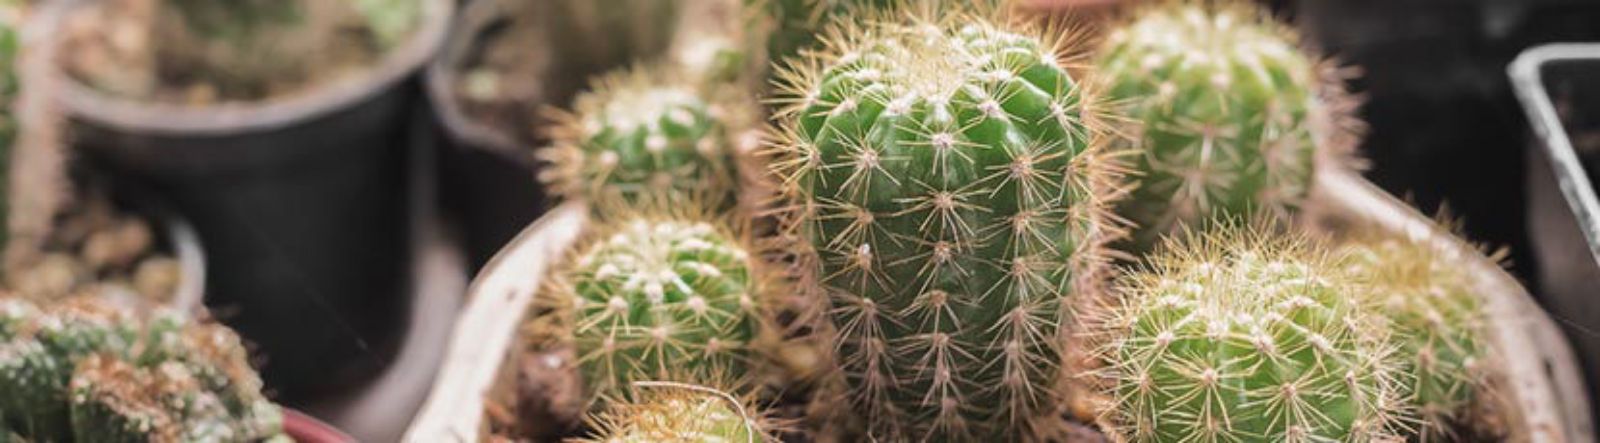 Le Cactus : source d'émerveillement